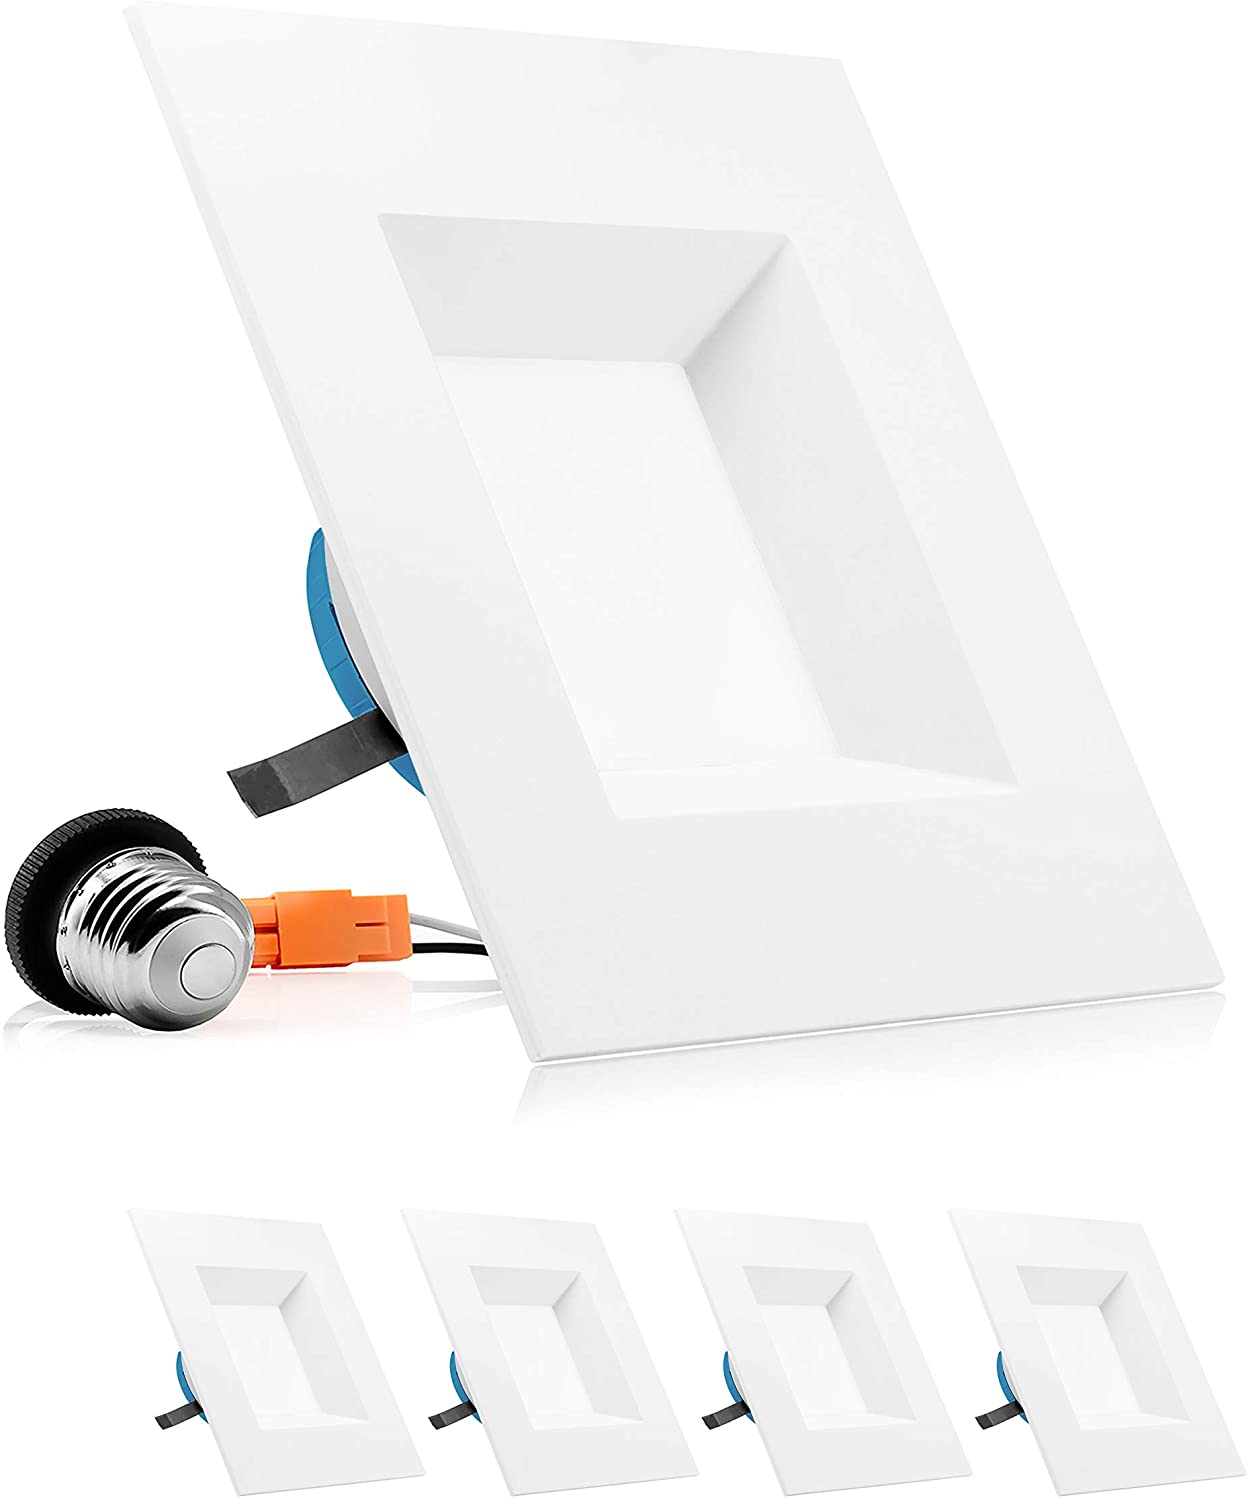 PARMIDA 6 Inch LED Square Recessed Retrofit Lighting